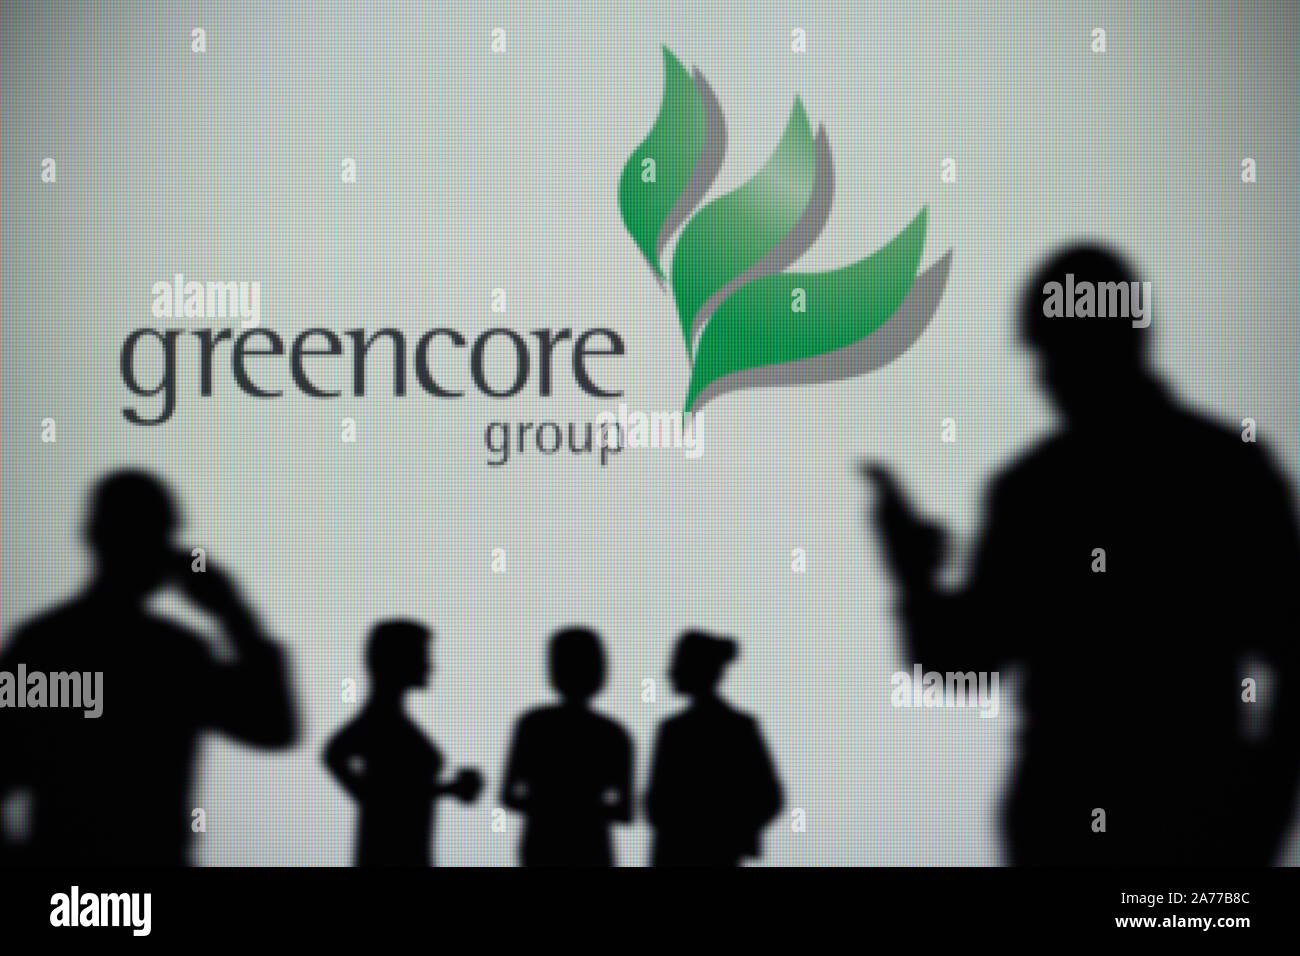 El Greencore logo es visto en una pantalla LED en el fondo mientras una silueta persona utiliza un smartphone (uso Editorial solamente) Foto de stock